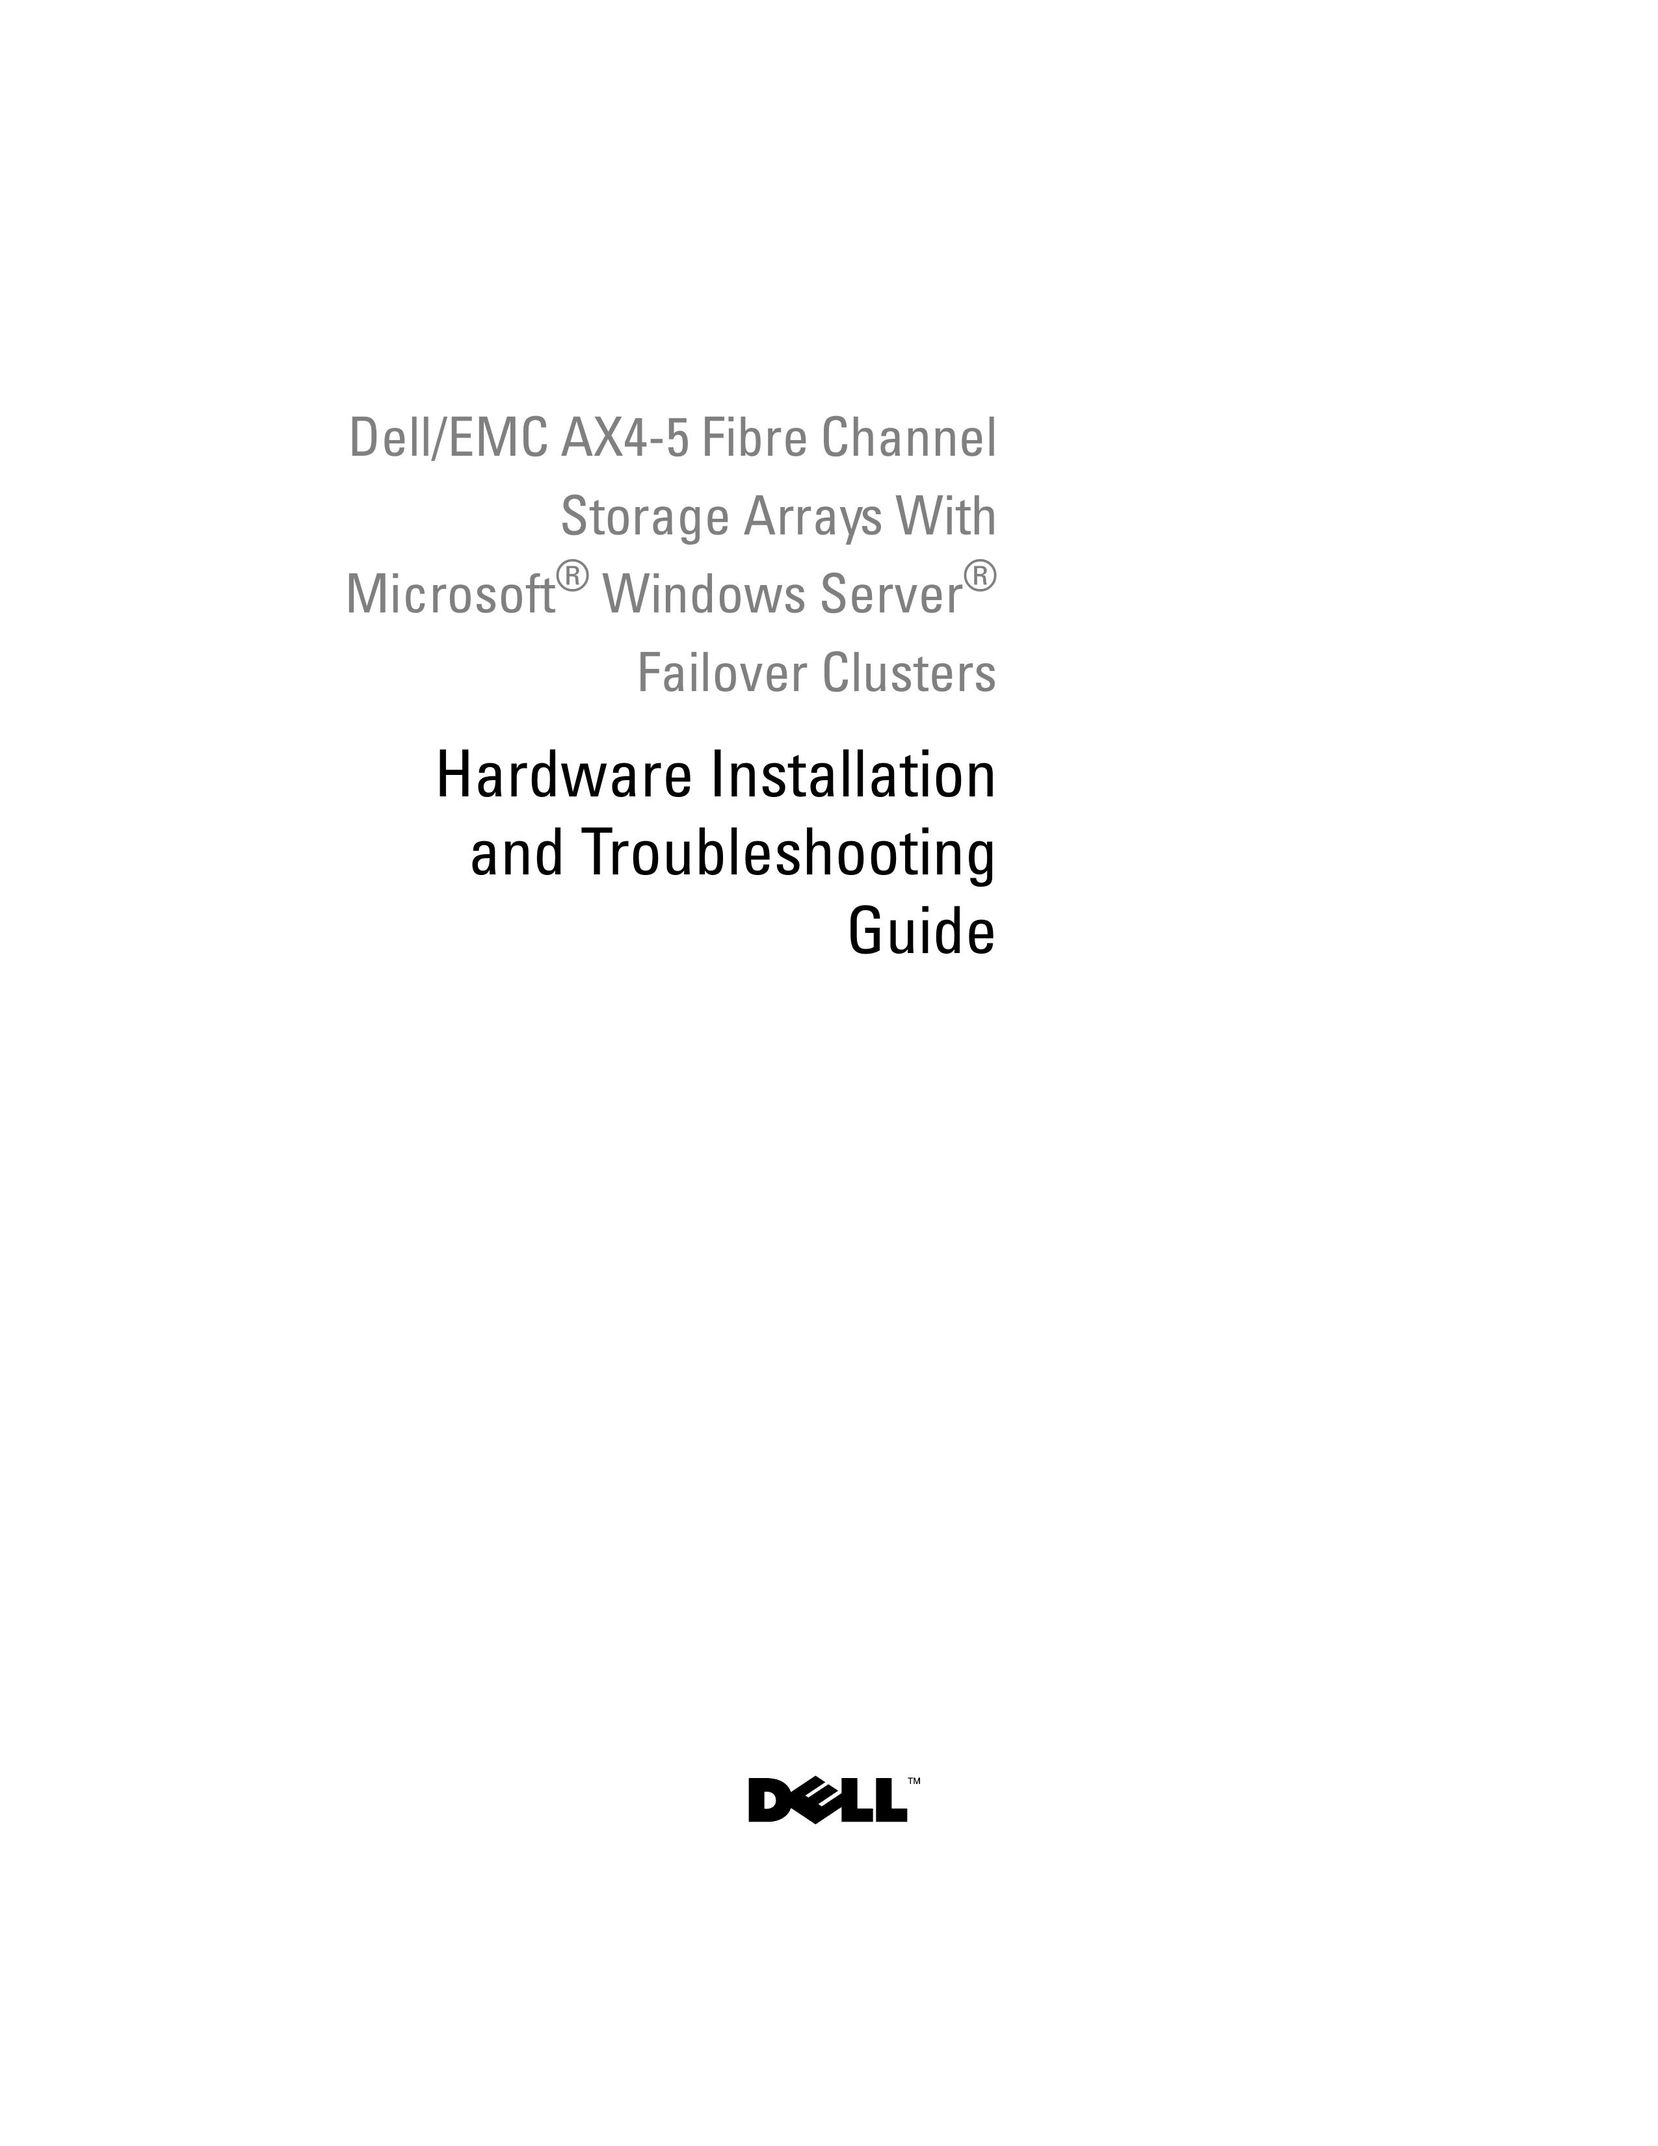 Dell EMC AX4-5 Portable Media Storage User Manual